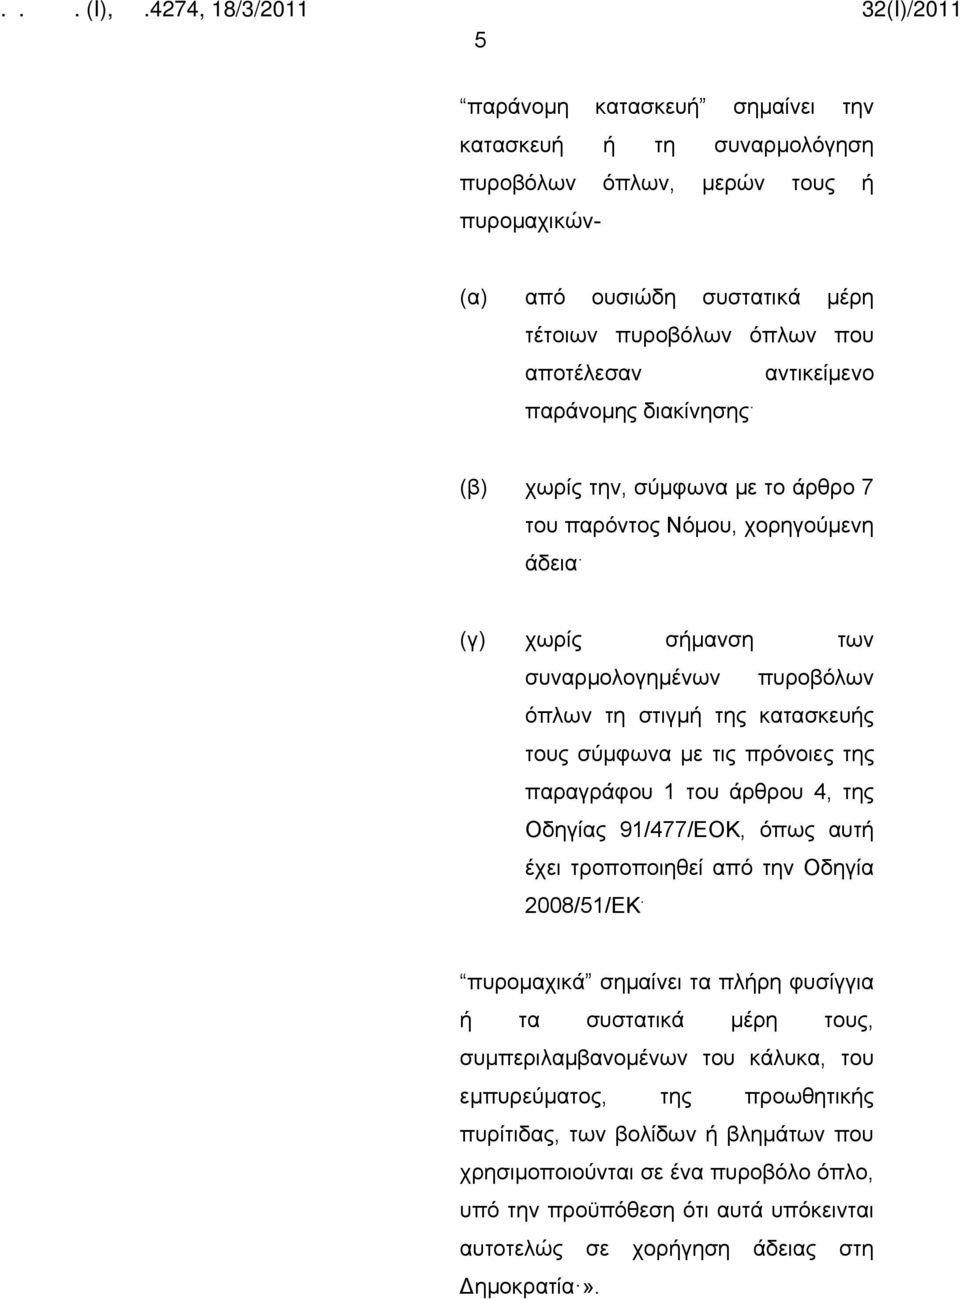 της παραγράφου 1 του άρθρου 4, της Οδηγίας 91/477/ΕΟΚ, όπως αυτή έχει τροποποιηθεί από την Οδηγία 2008/51/ΕΚ.